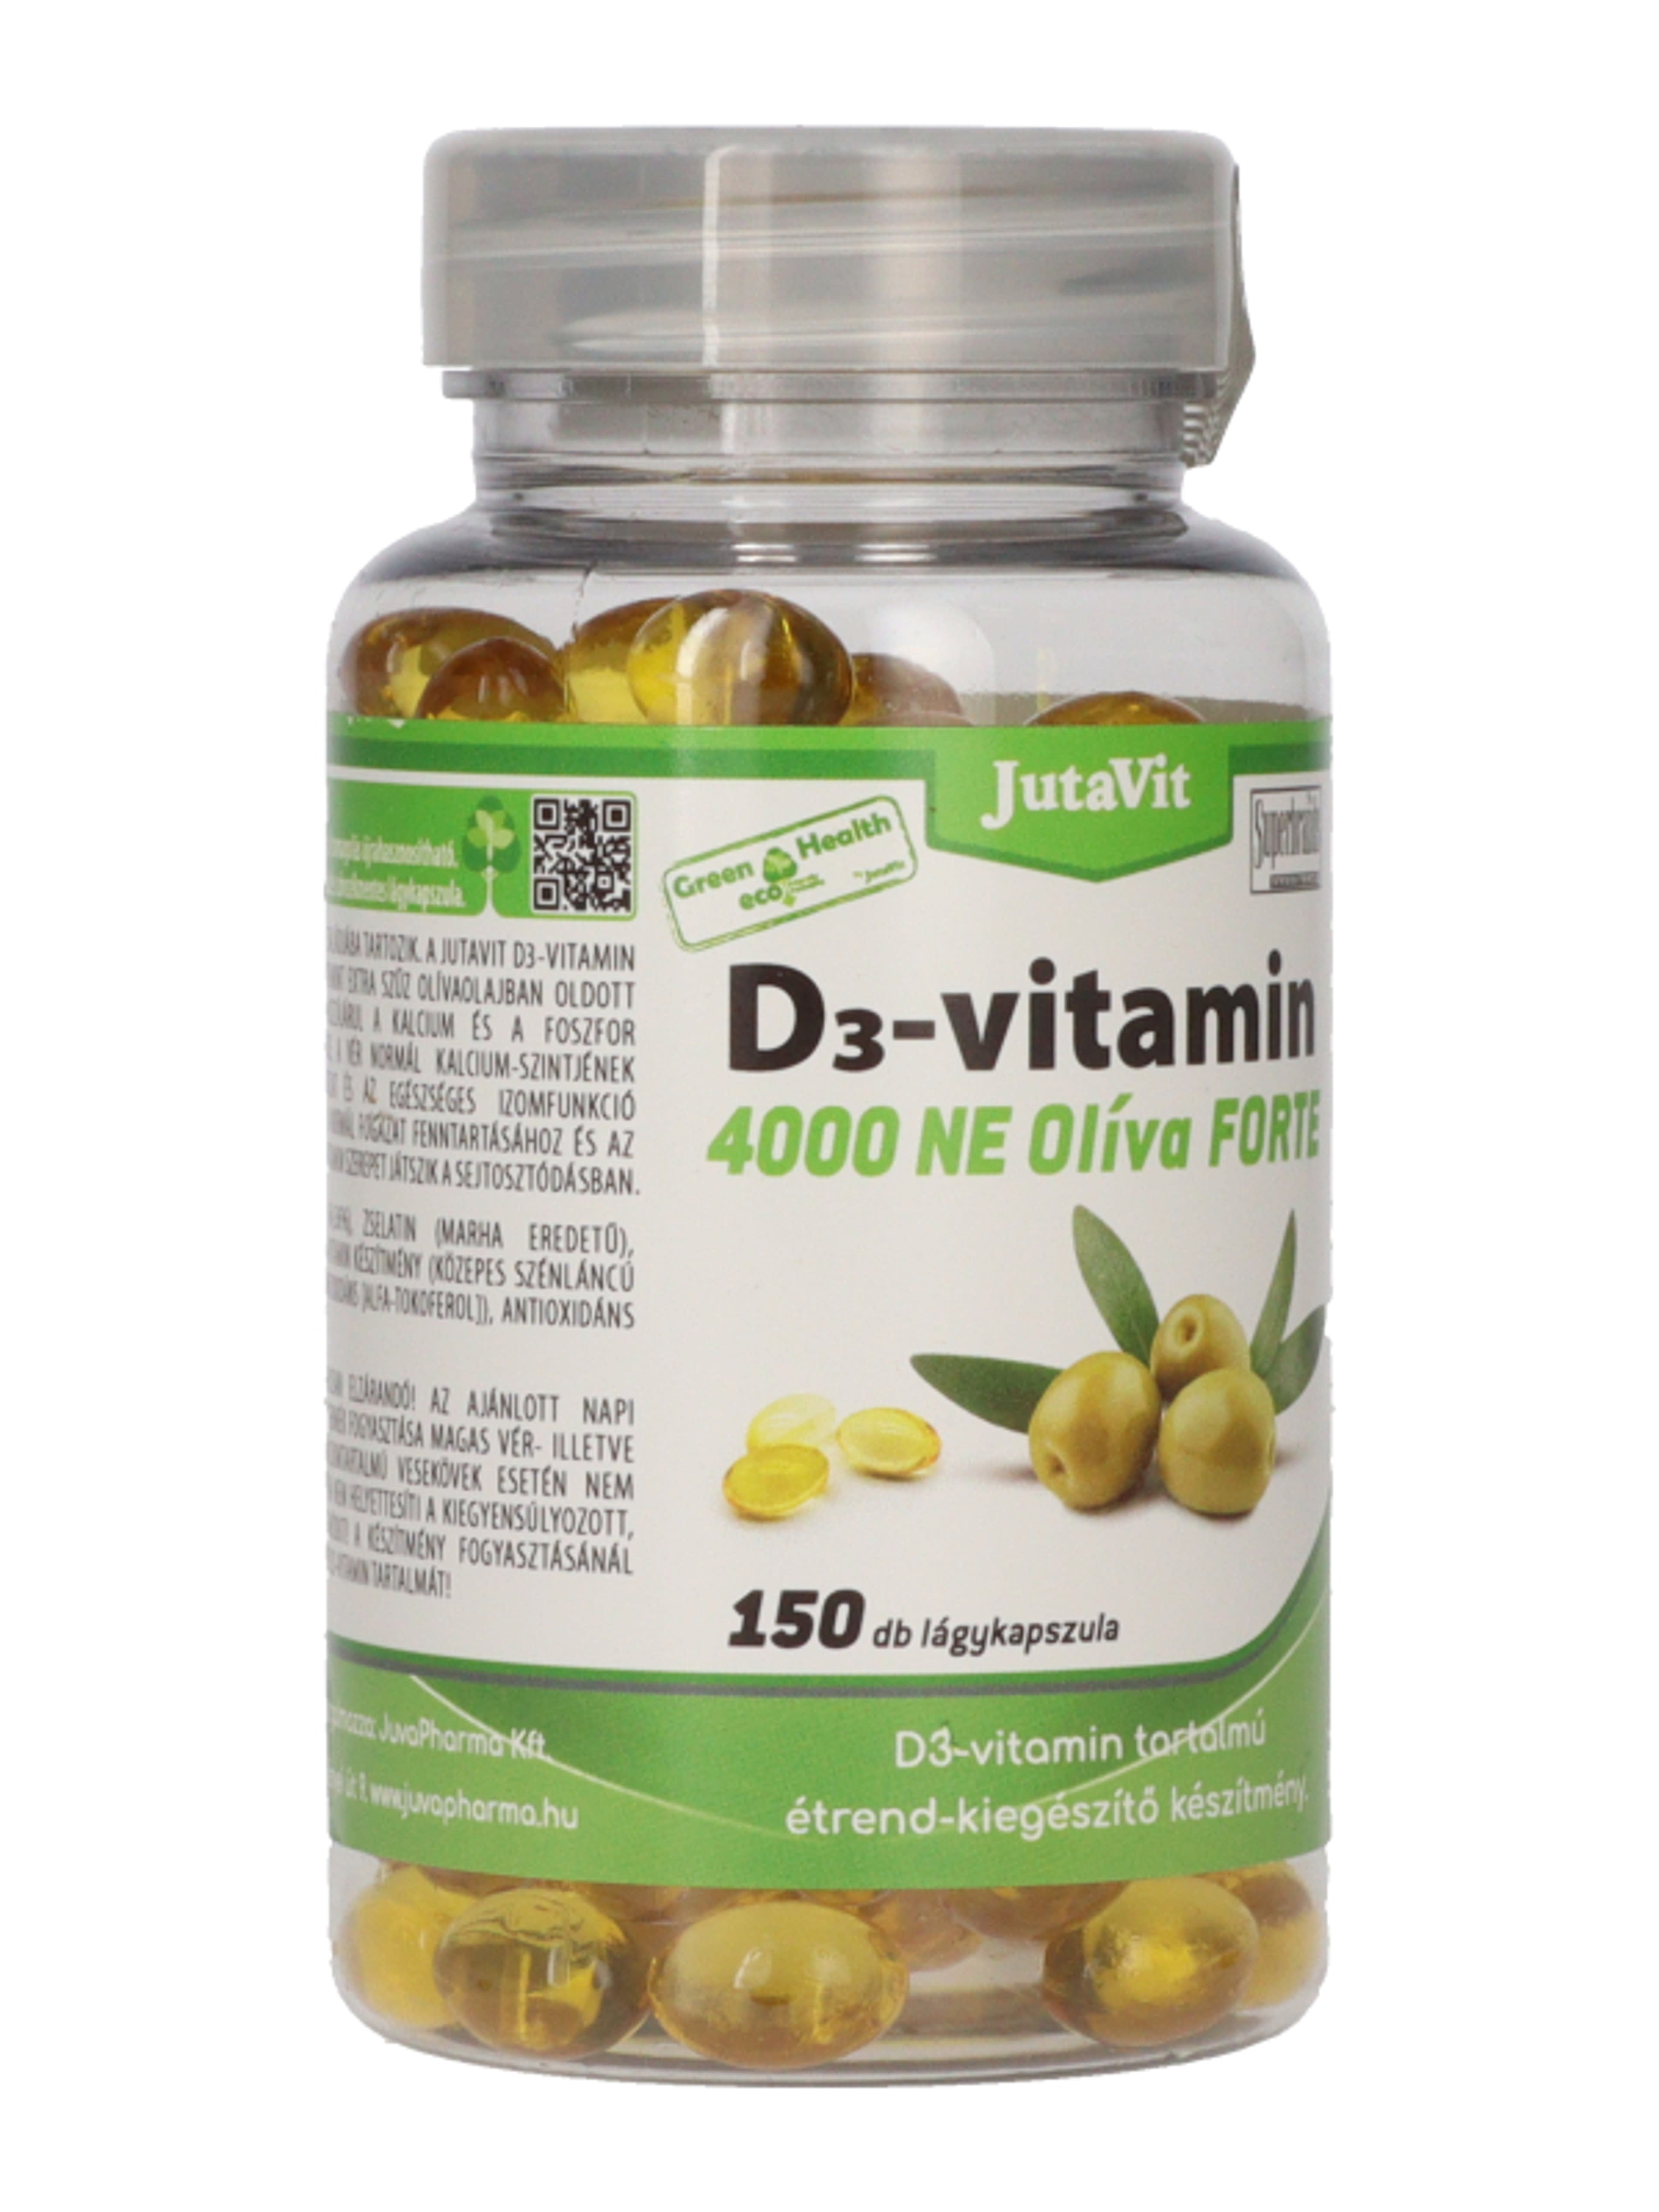 Jutavit Green & Health D3-vitamin 4000 NE Olíva Forte étrend-kiegészítő lágykapszula - 150 db-4